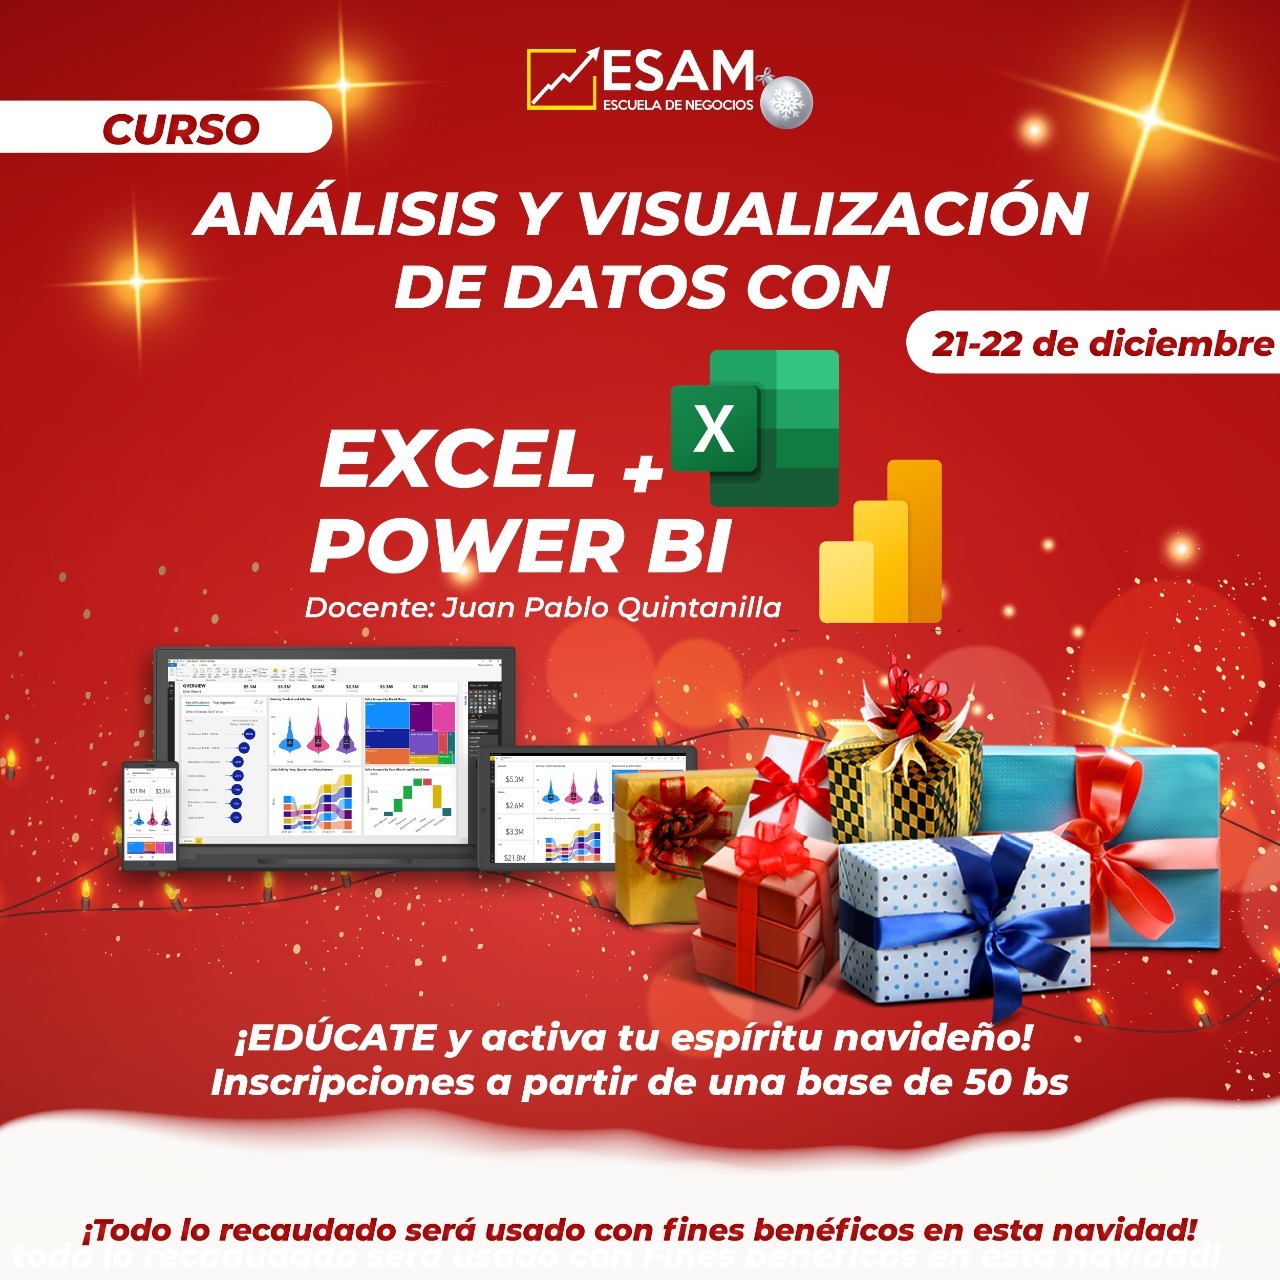 Esam Cursos Análisis y Visualización de Datos en Excel y Power Bi